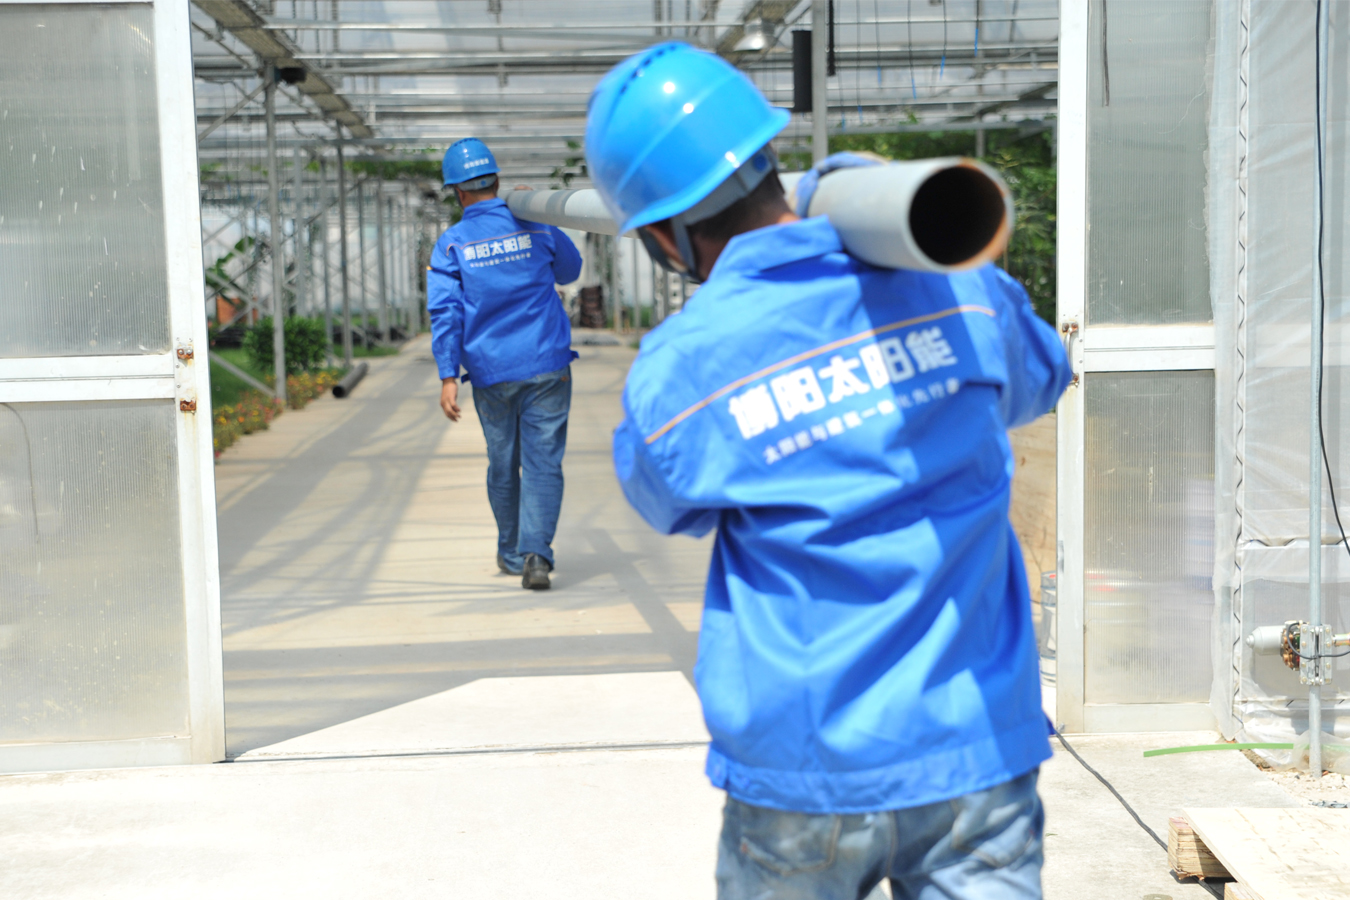 上海农林职业技术学院多能互补能源系统交付使用